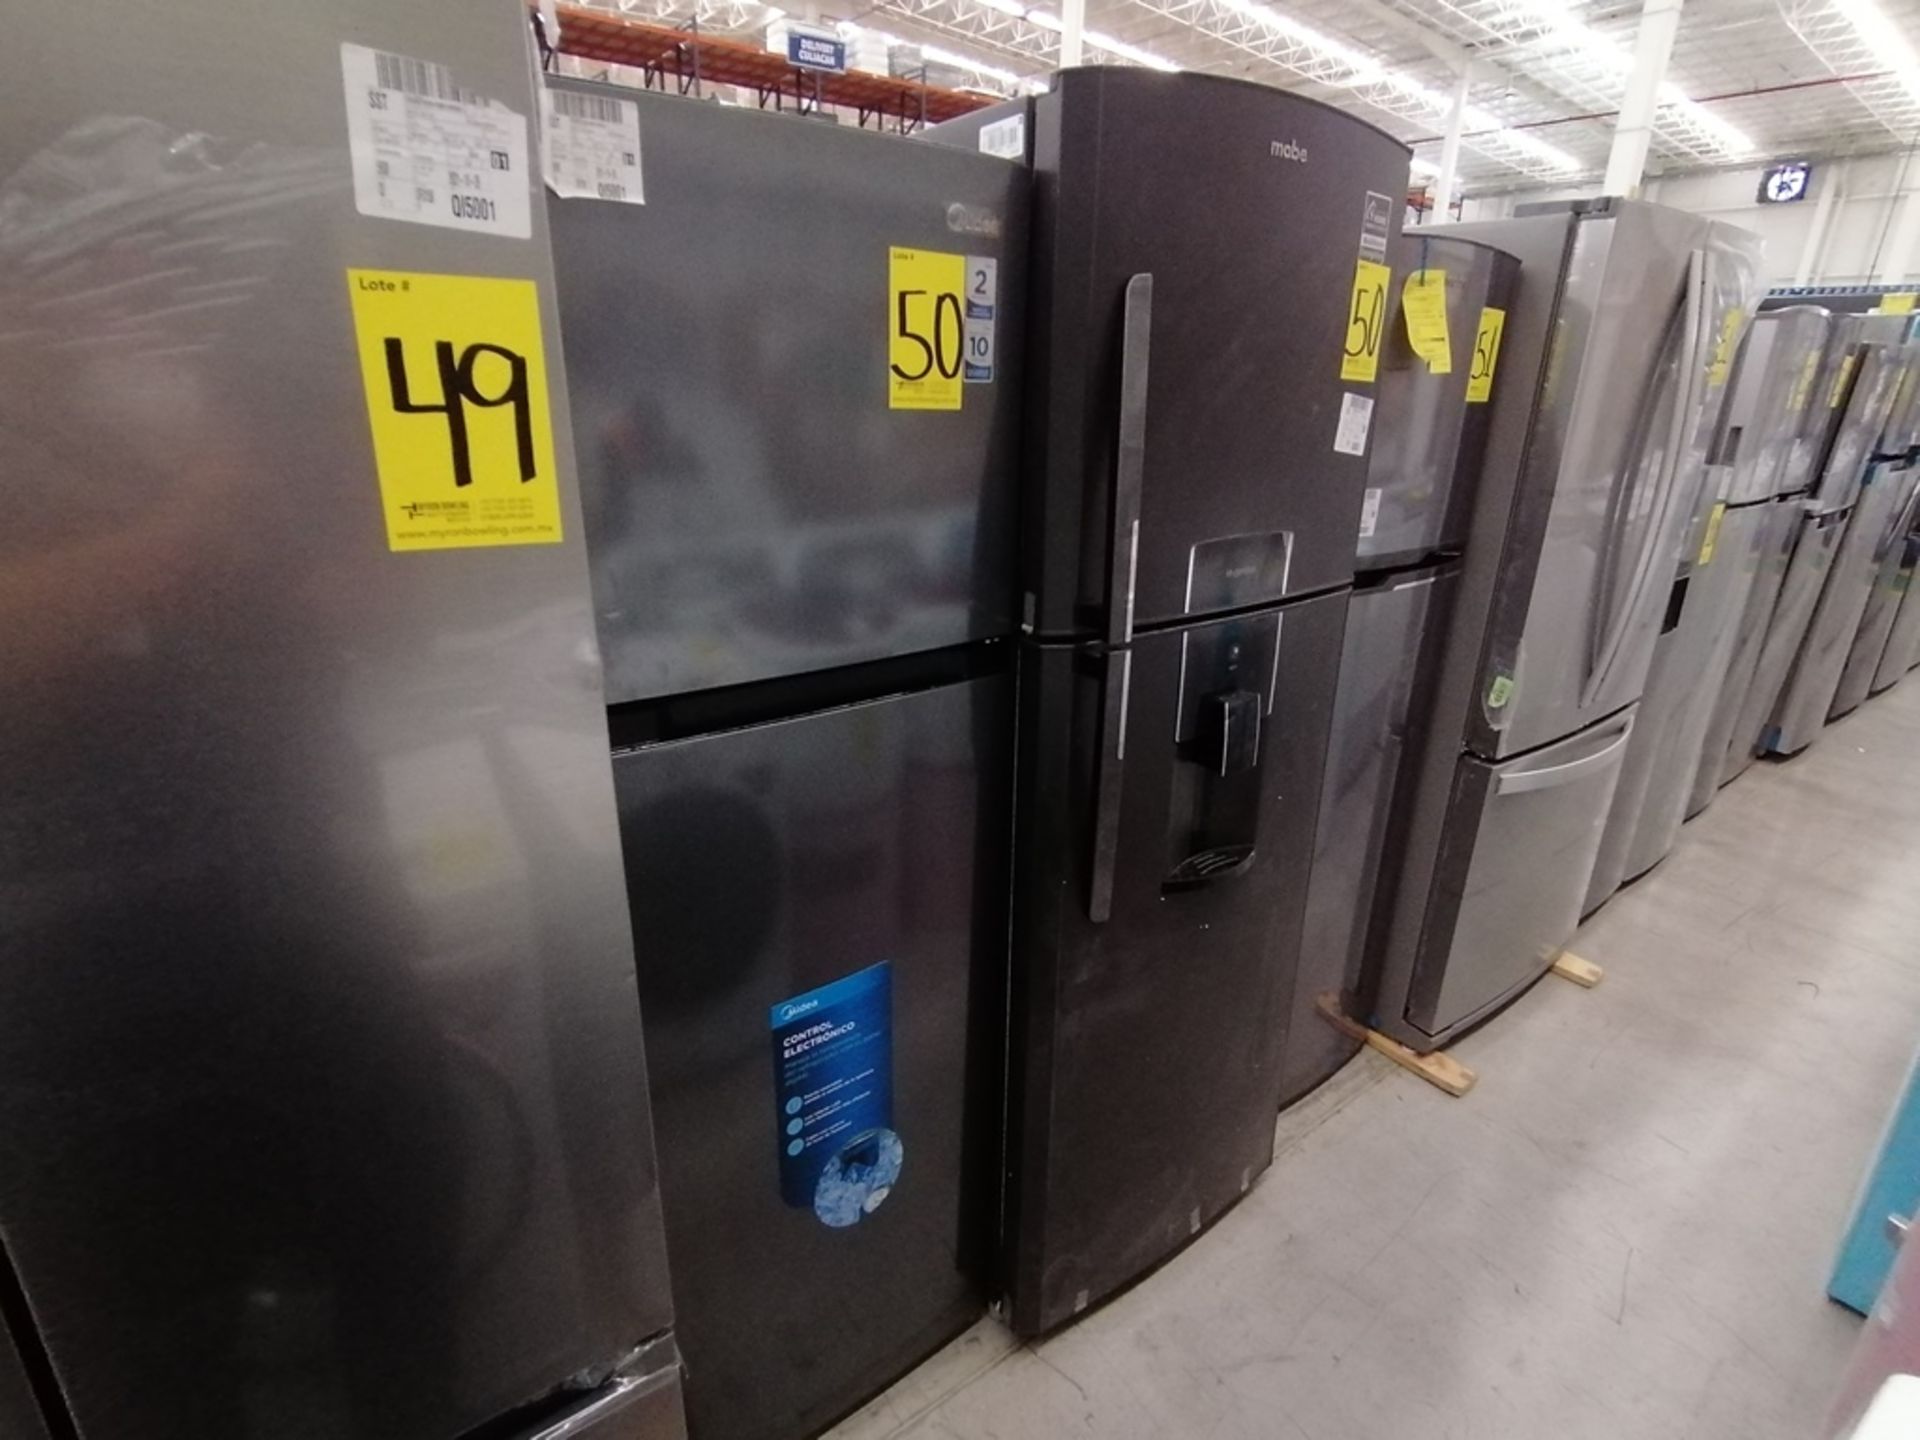 Lote de 2 refrigeradores incluye: 1 Refrigerador, Marca Midea, Modelo MRTN09G2NCS, Serie 341B261870 - Image 9 of 15